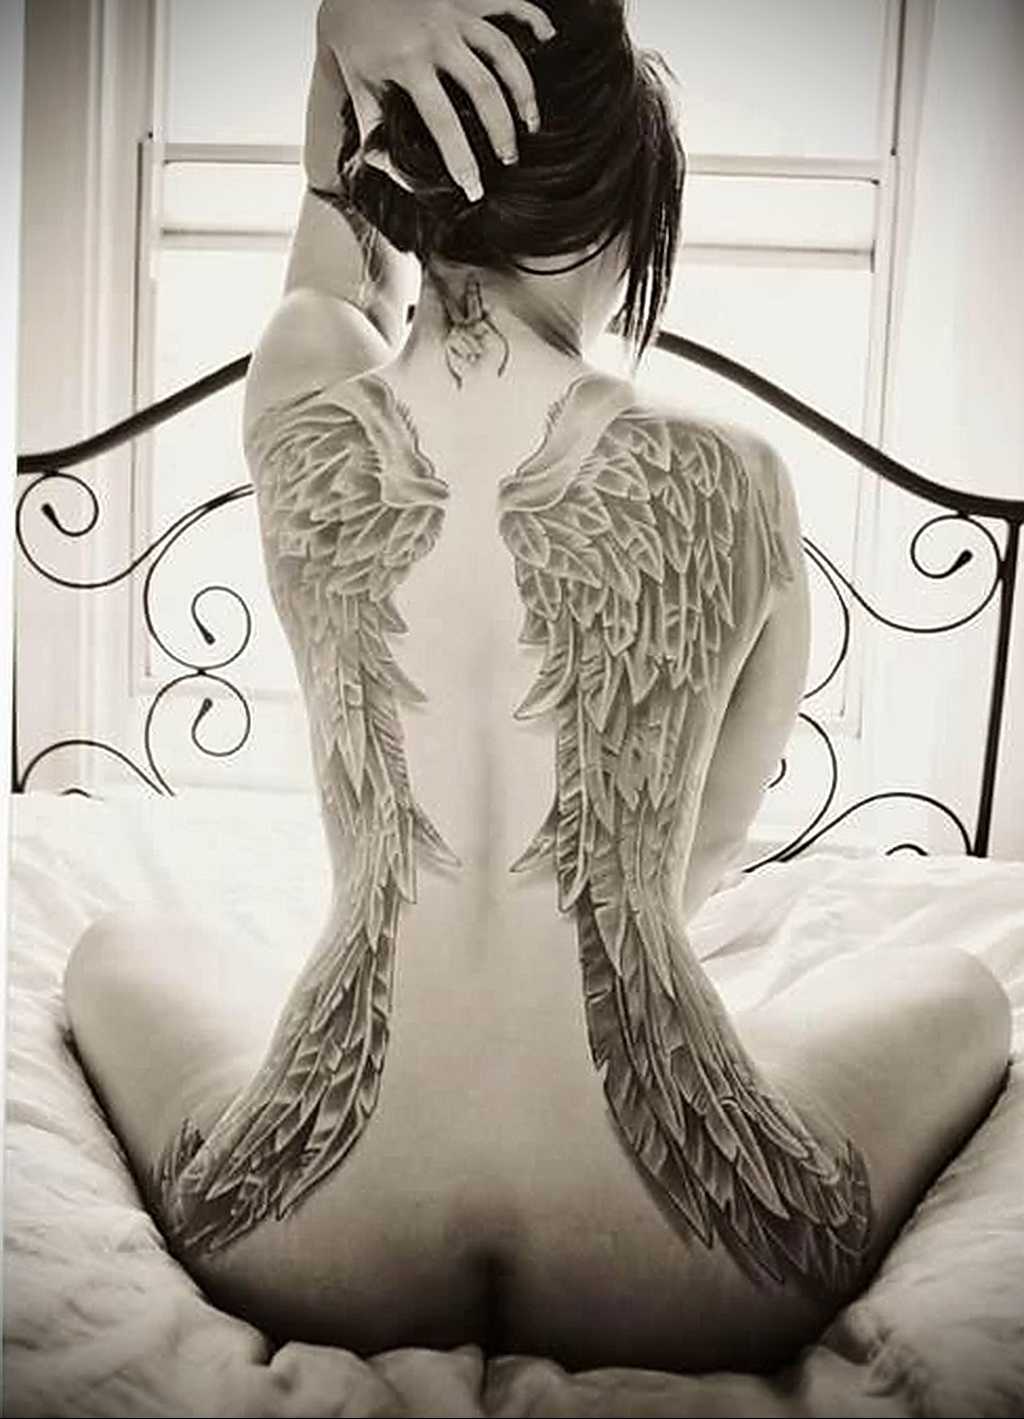 Татуировки крыльев на спине, на плечах, очень распространенные среди современной молодежи Обладать ей достойна не каждая девушка, - необходимо осознавать смысл нательной живописи, поднявшись над предрассудками и предубеждениями